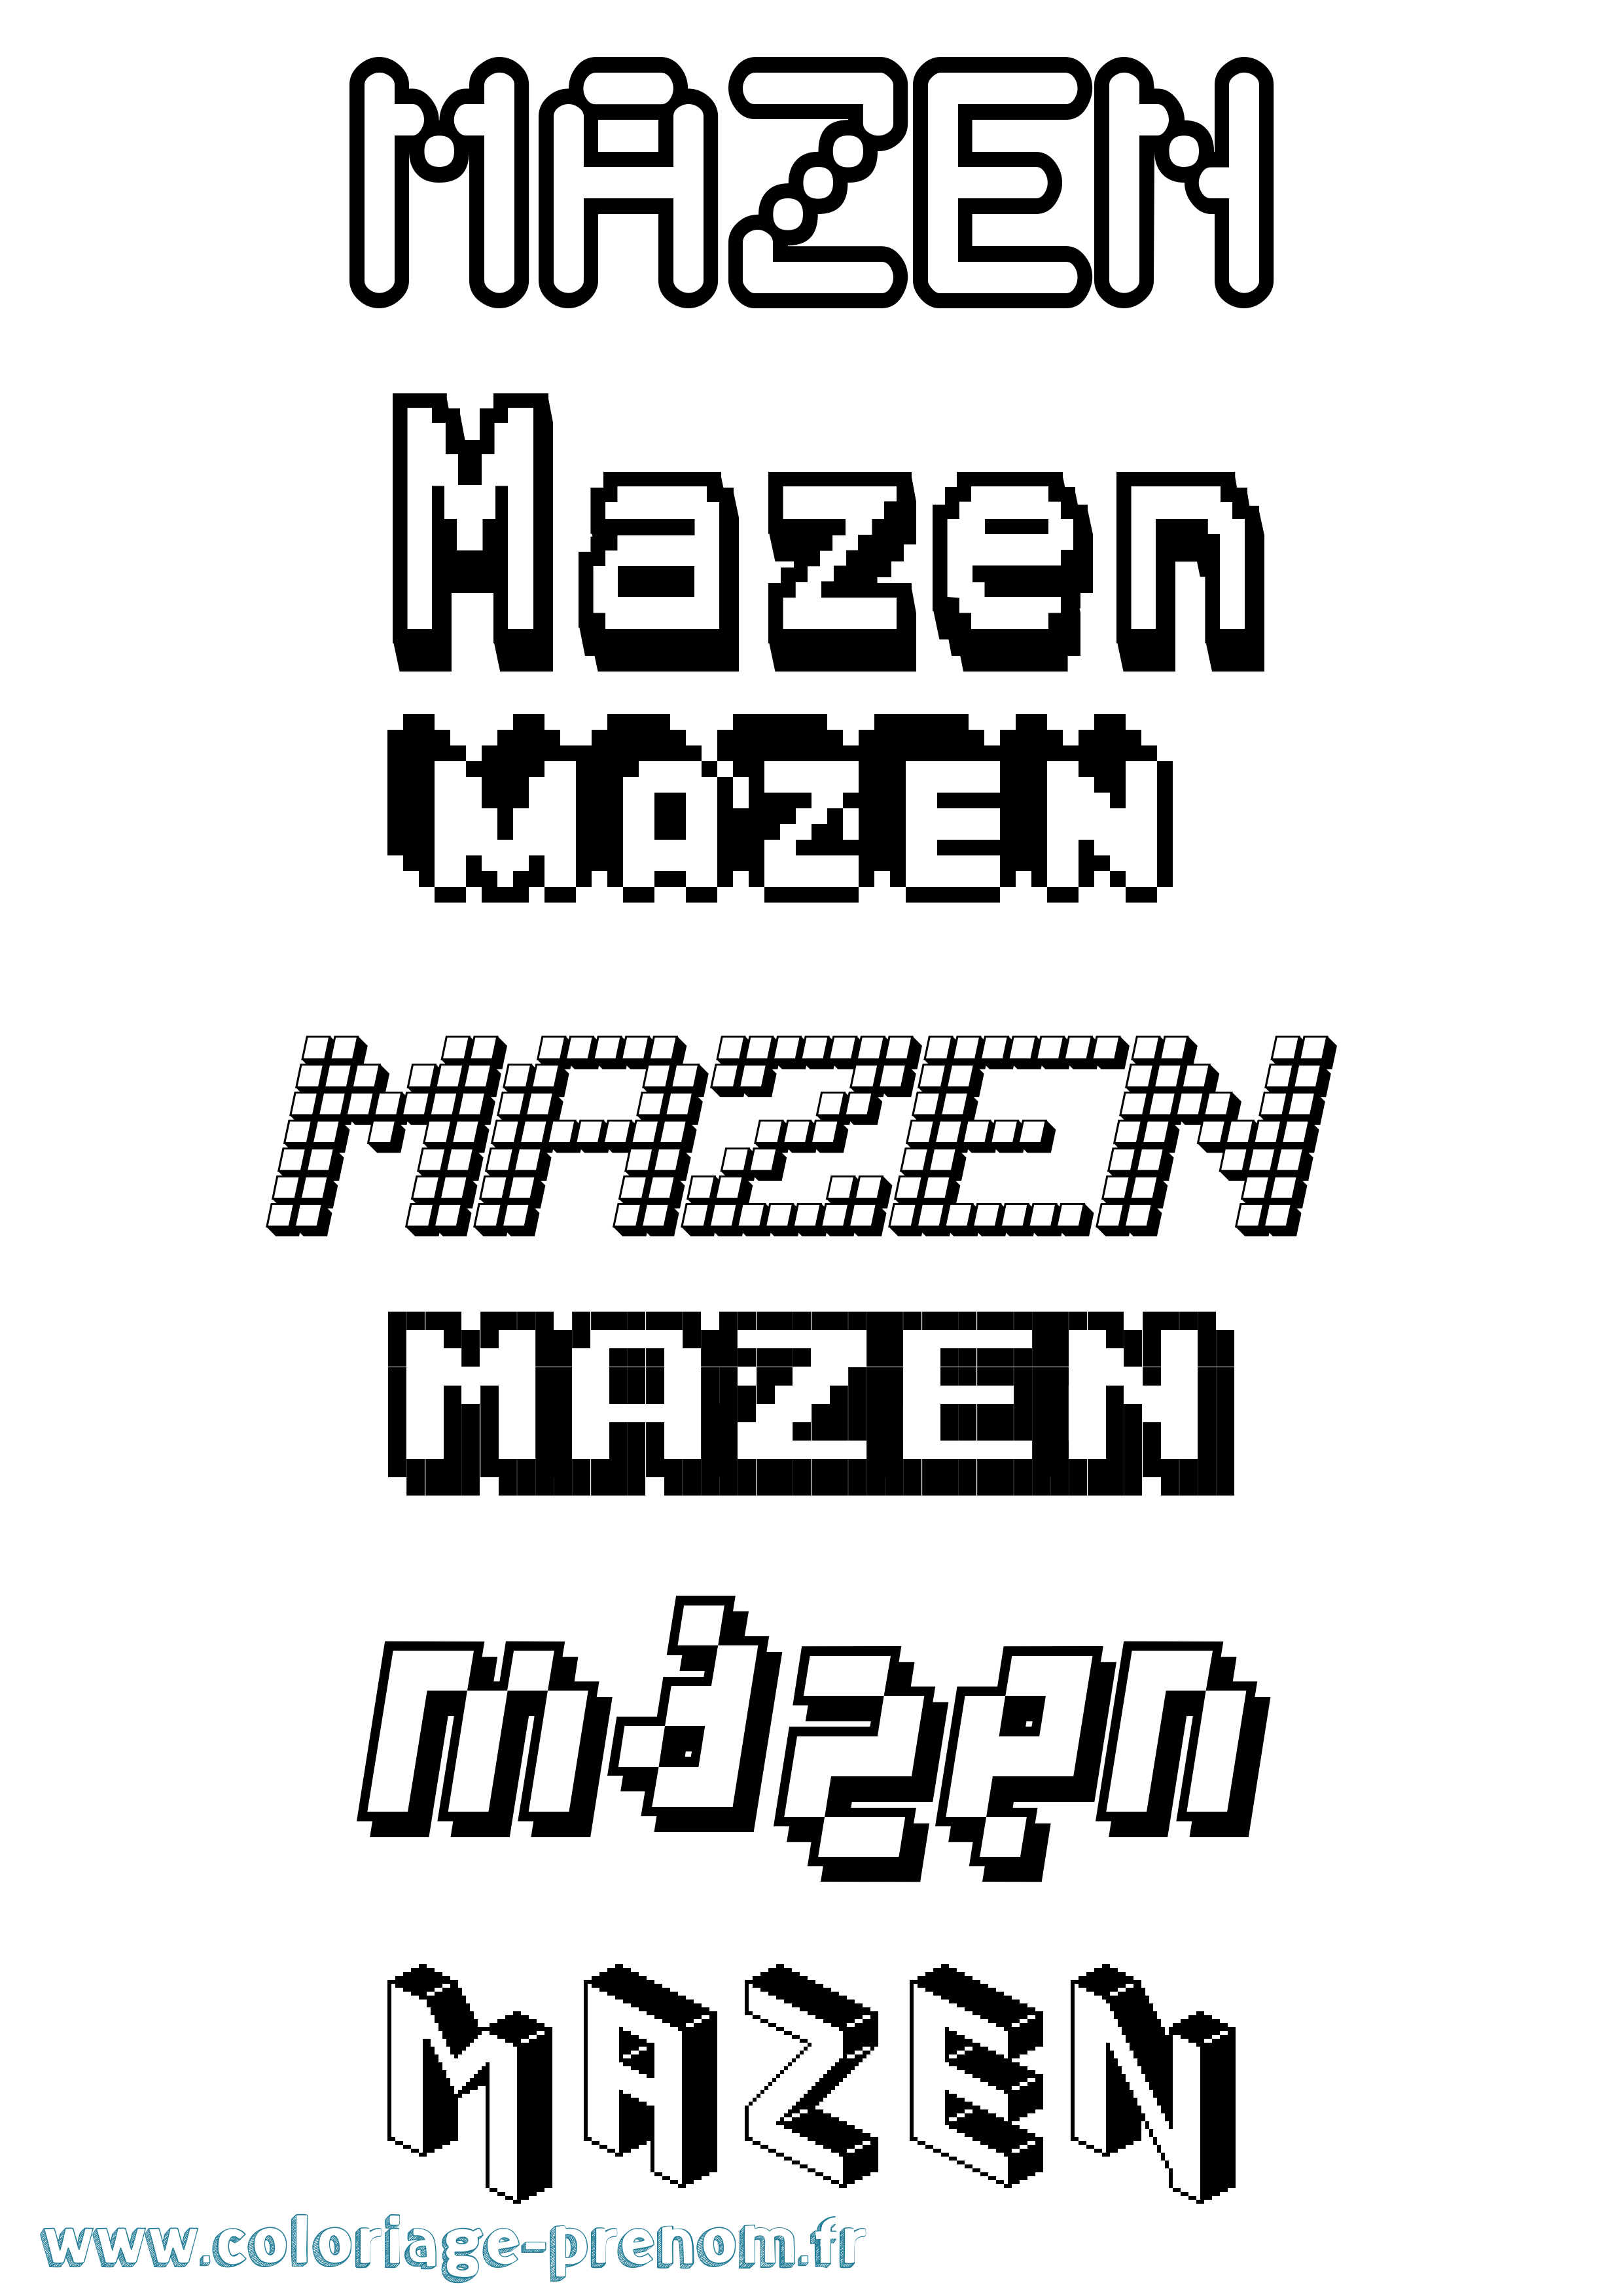 Coloriage prénom Mazen Pixel